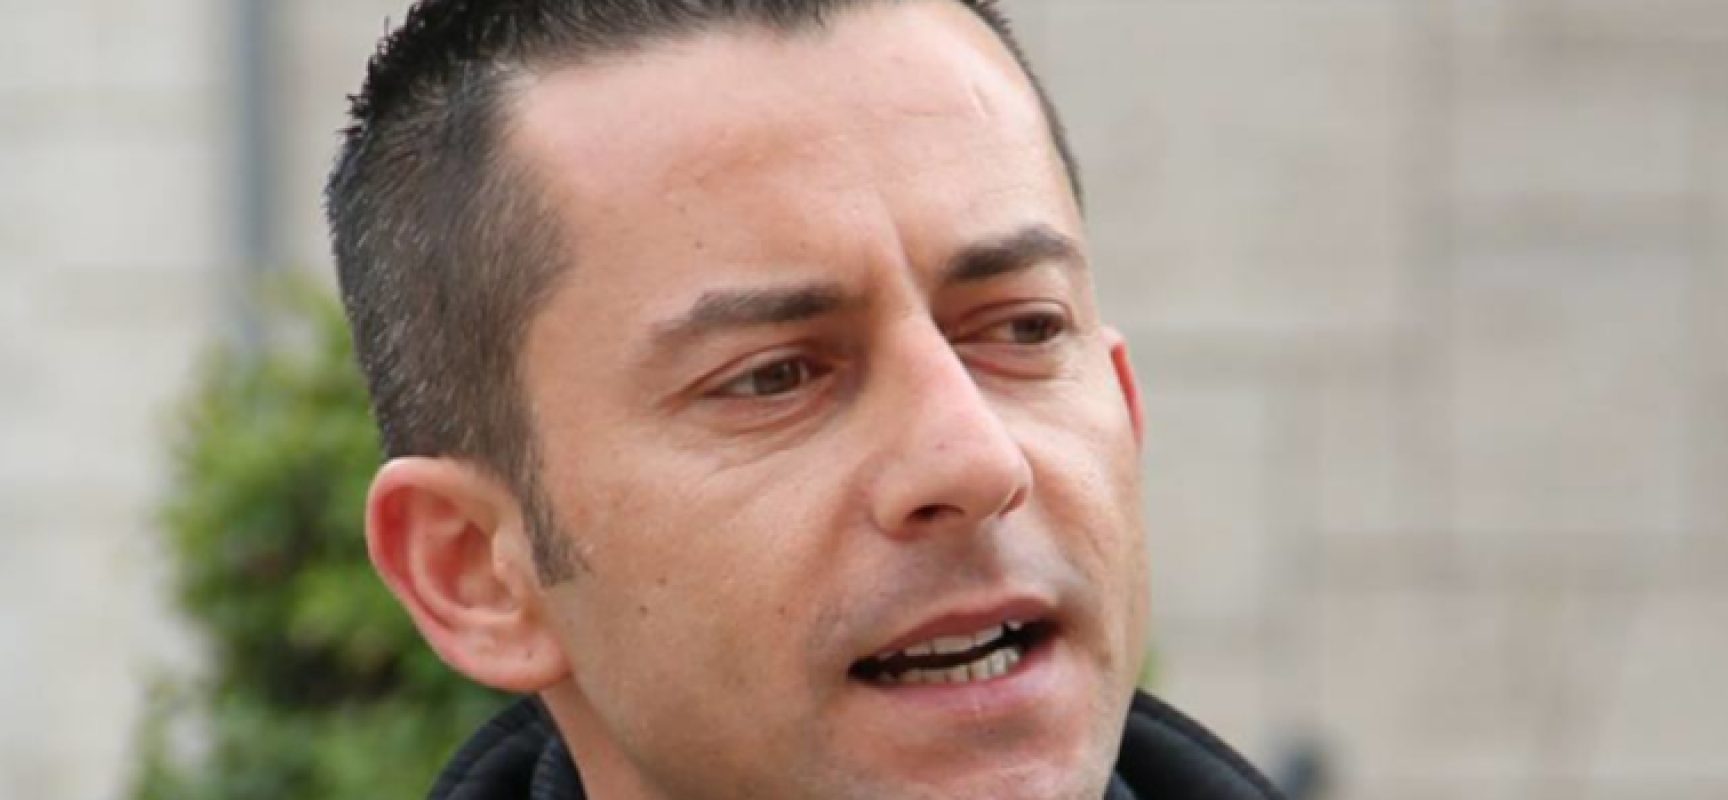 Davide Galantino risponde alle accuse: “Mi dimetterò se lo farà anche Luigi Di Maio”